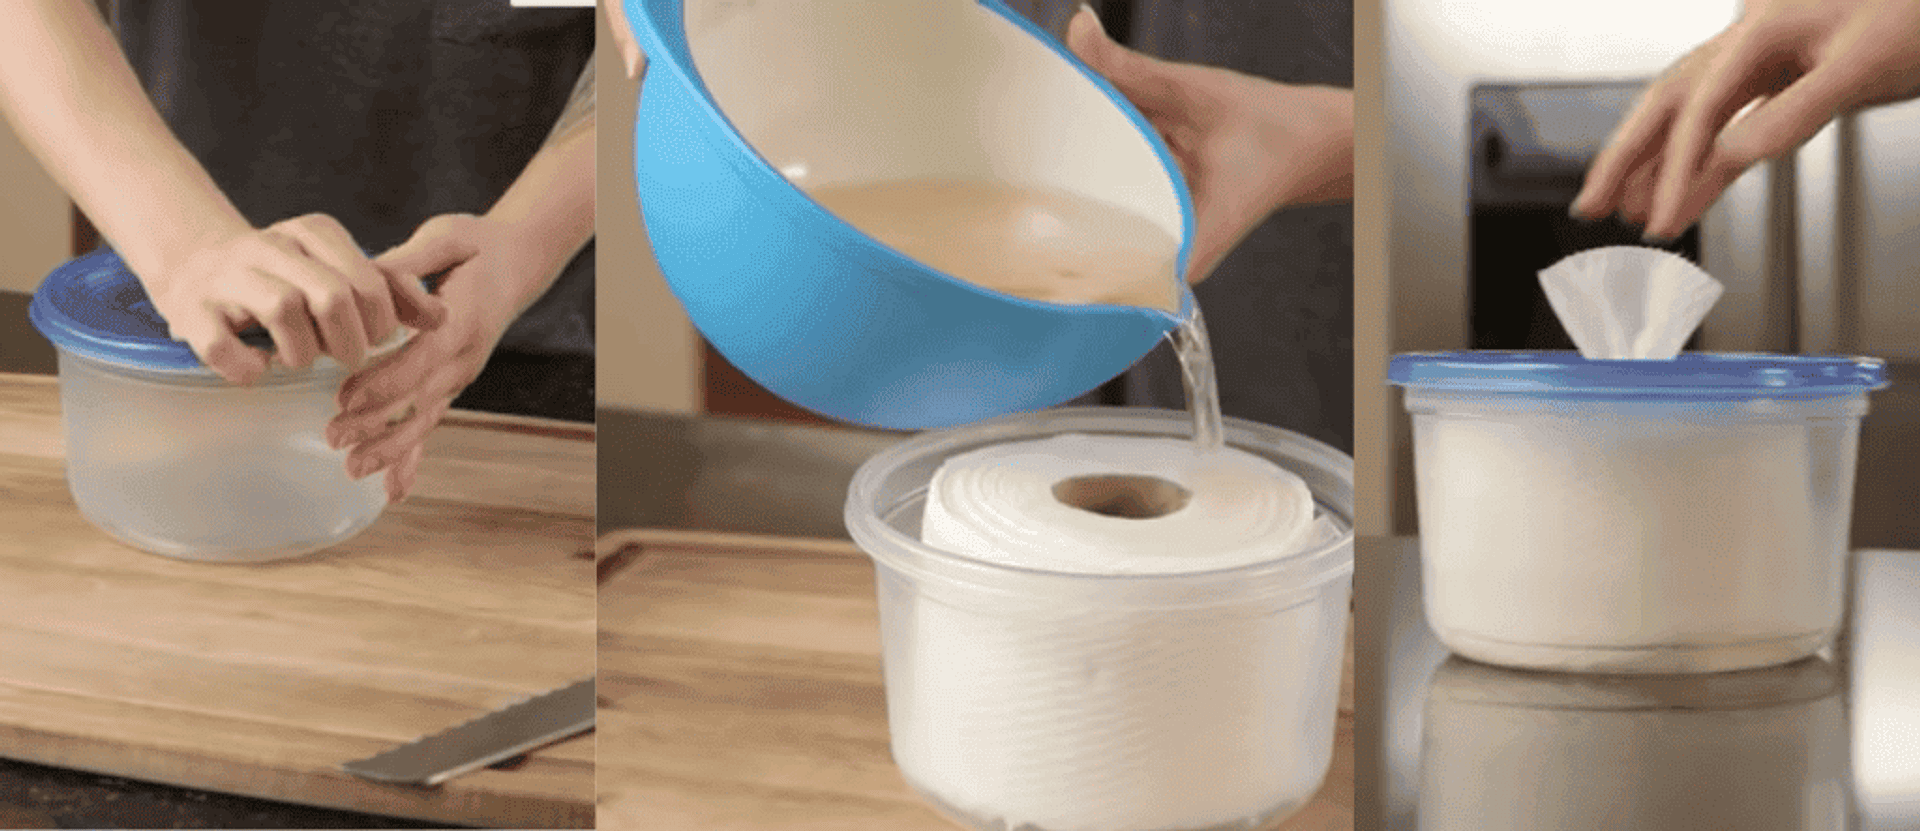 jak zrobić domowe chusteczki nawilżane